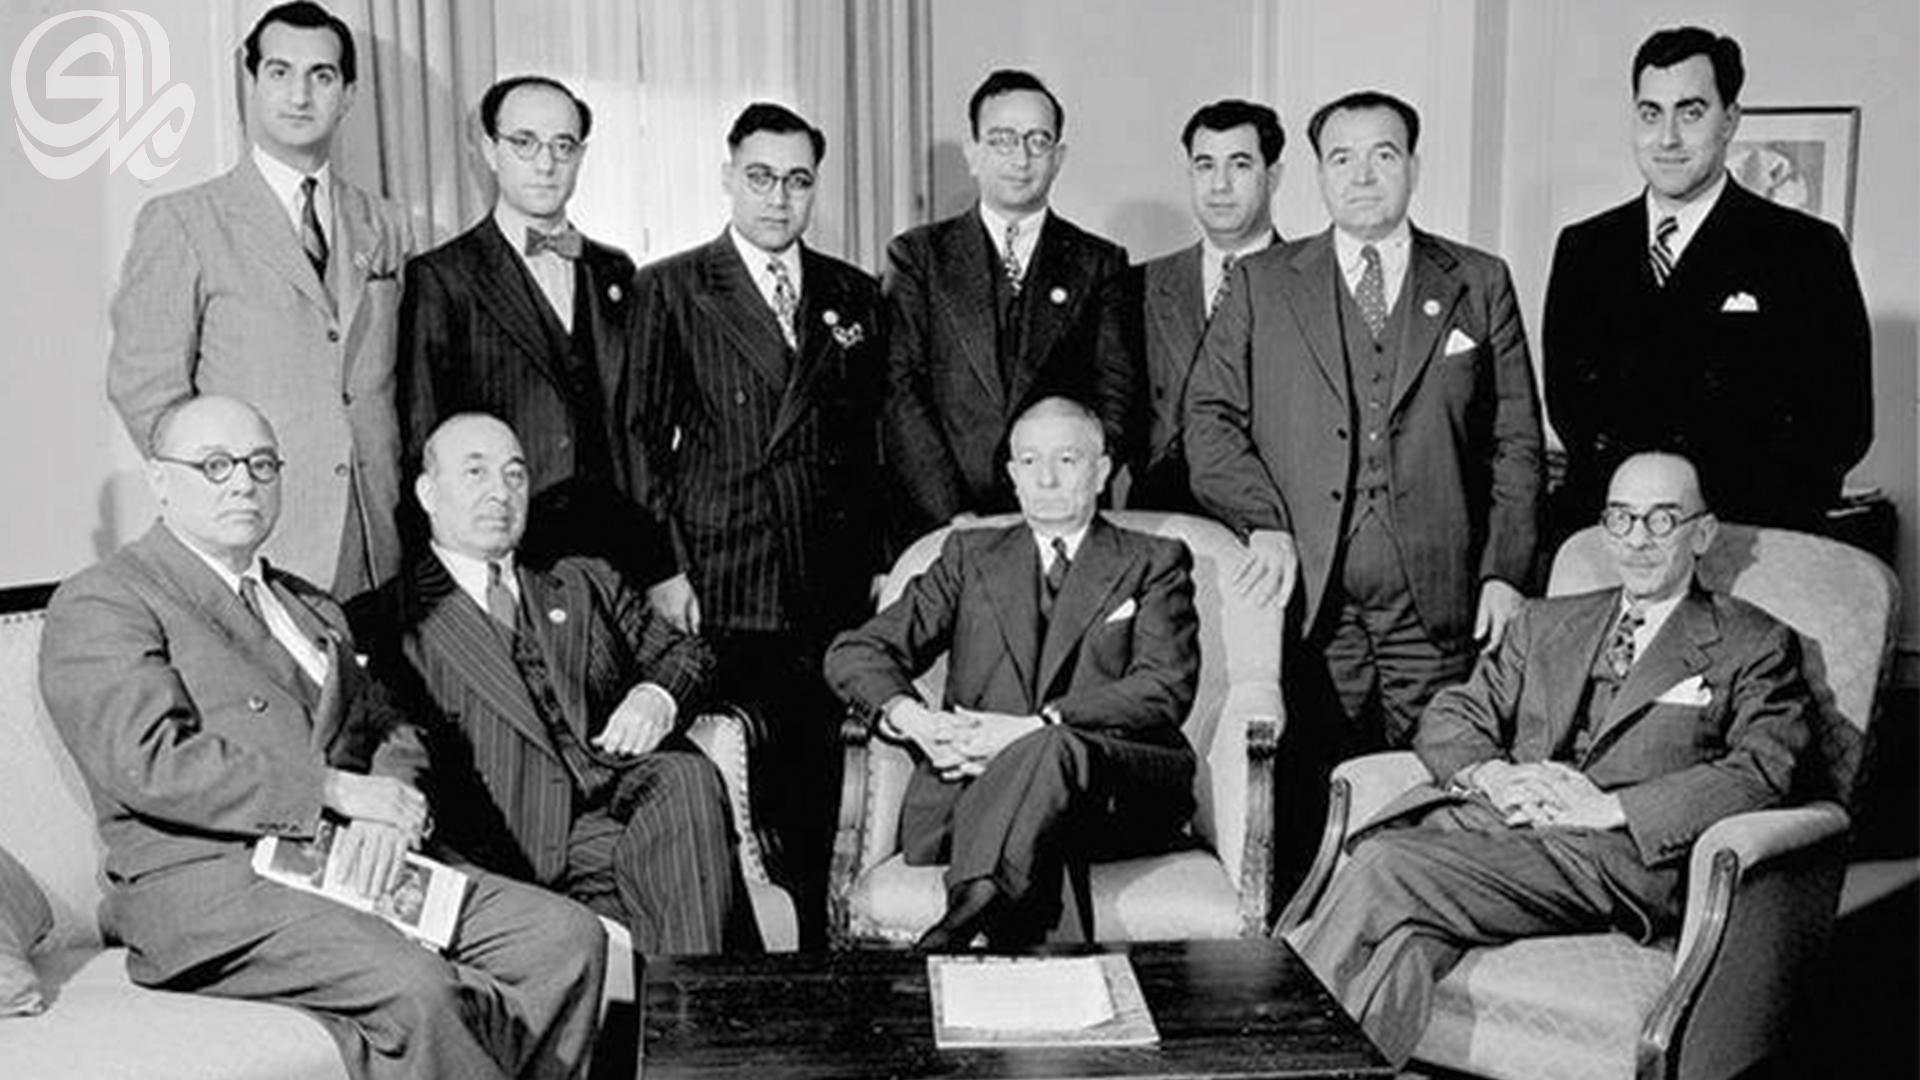 ذكرى استقلال العراق 3 تشرين الاول 1932.. هكذا أنضم العراق الى عصبة الأمم المتحدة وأعلن استقلاله..